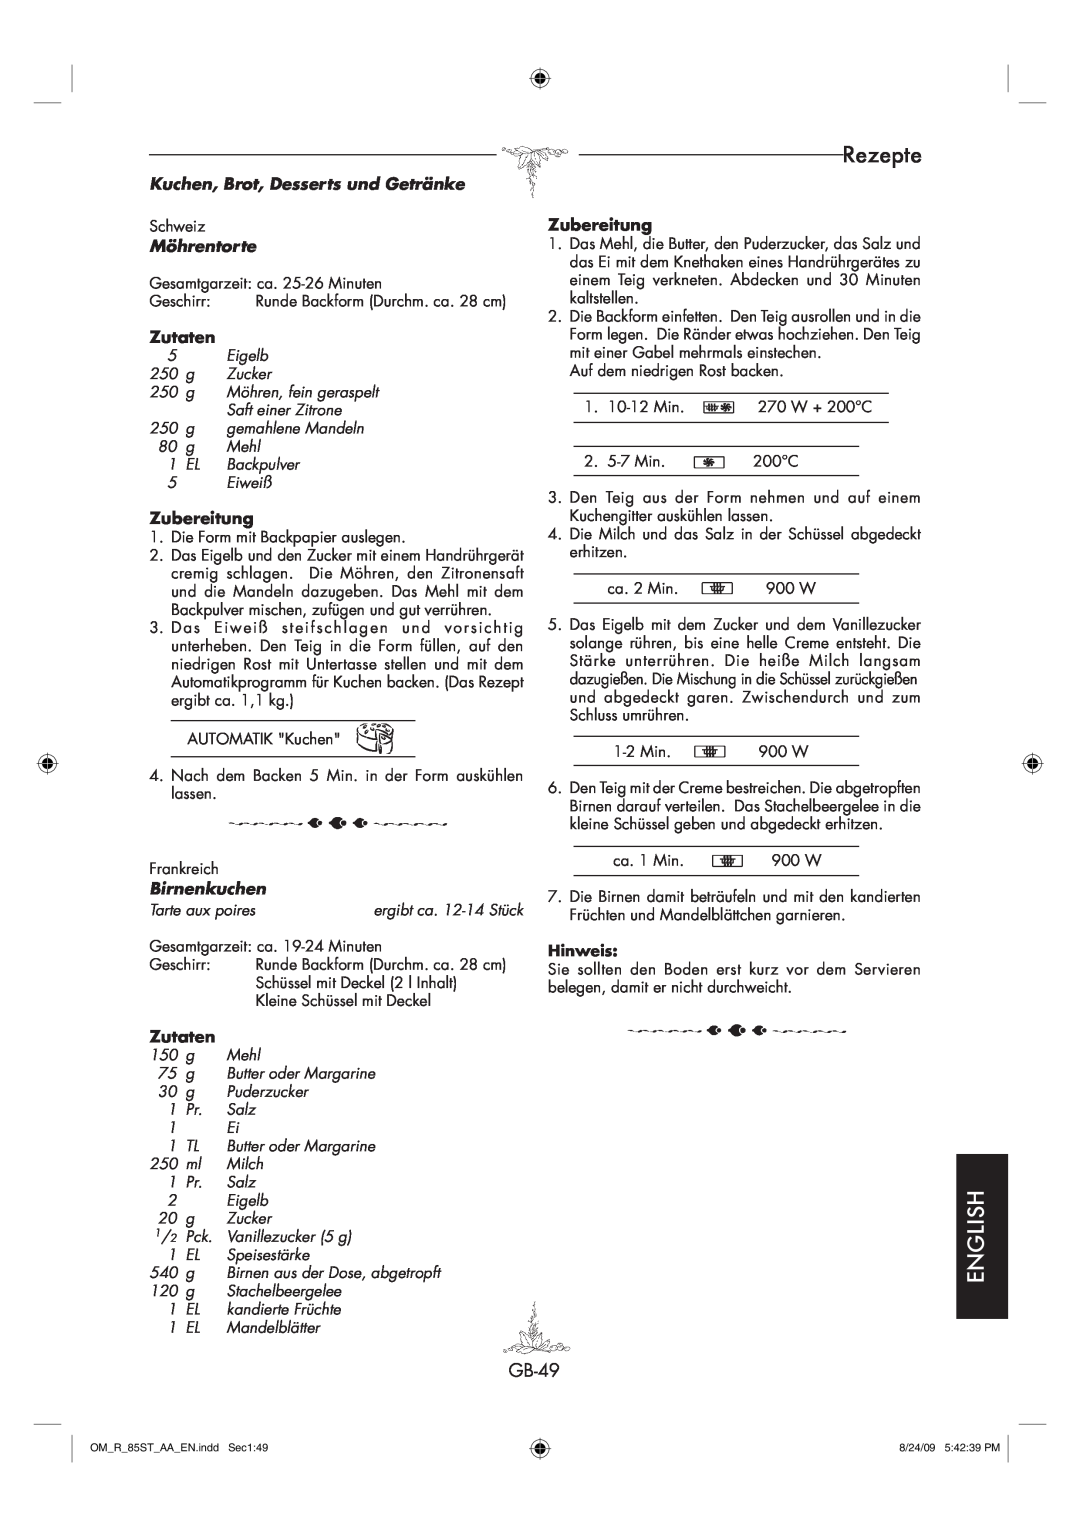 Sharp R-85ST-AA operation manual Rezepte, English, Kuchen, Brot, Desserts und Getränke, Möhrentorte, Birnenkuchen 